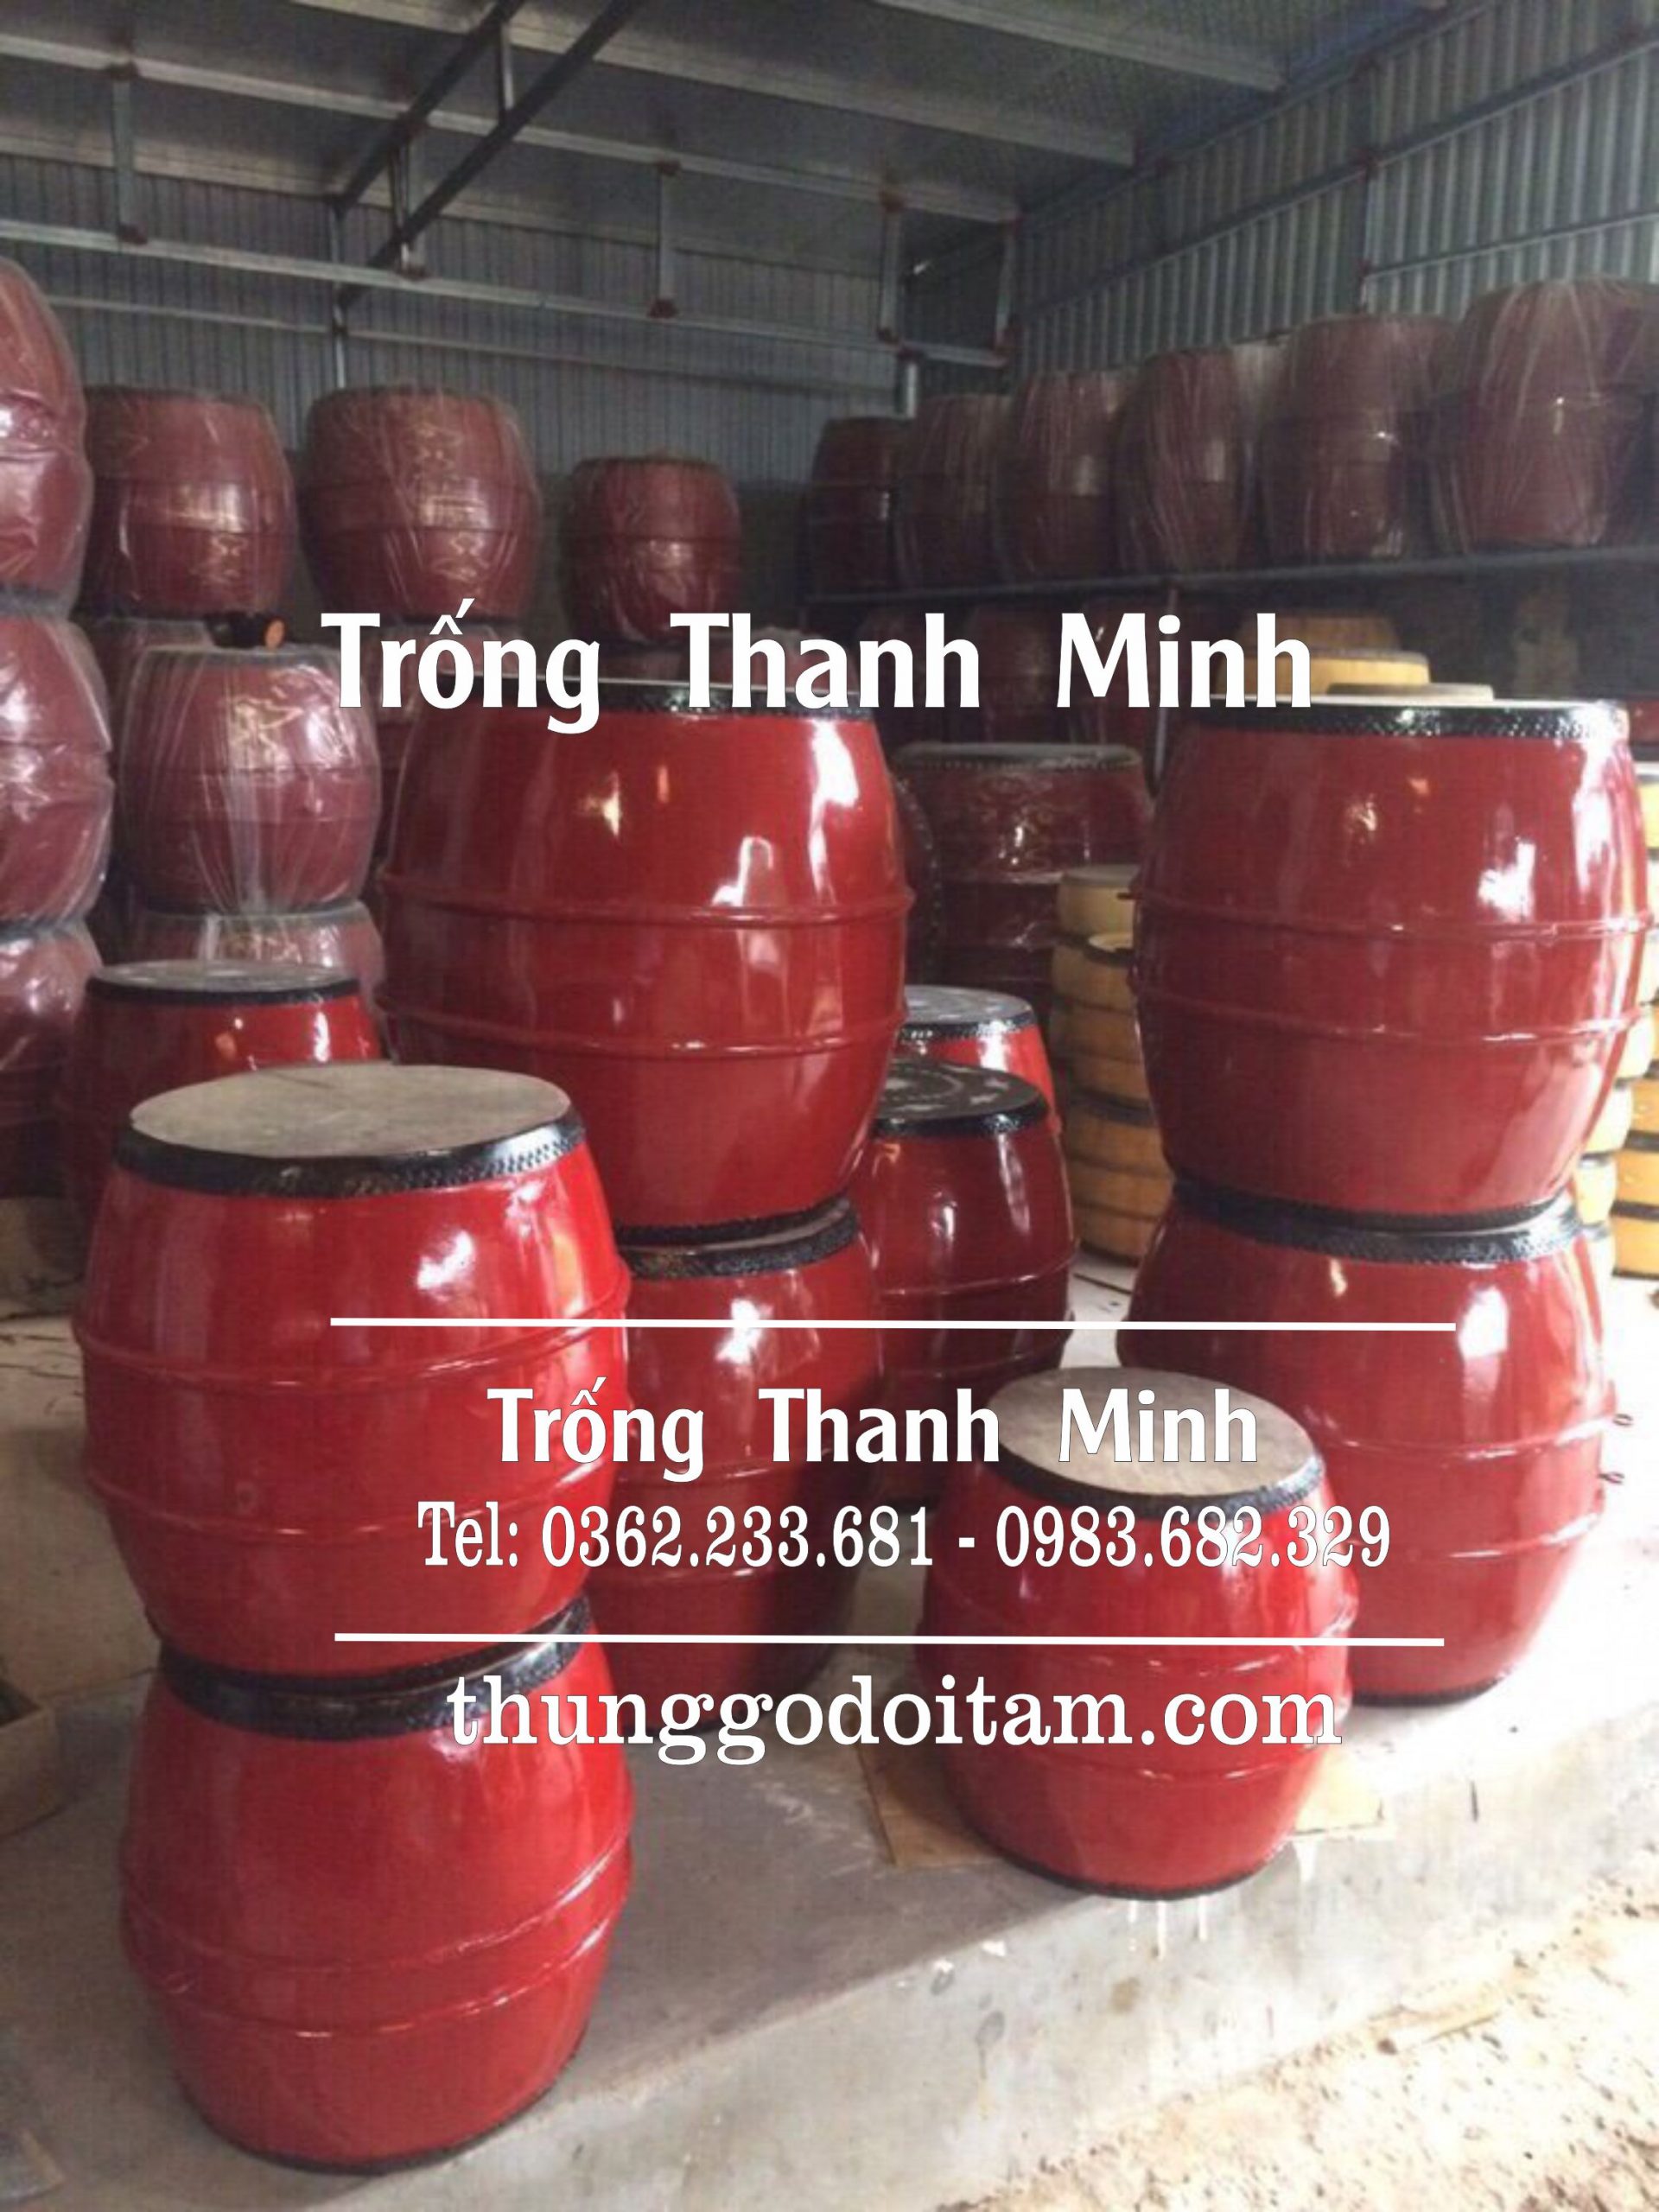 Xưởng sản xuất trống trường học Thanh Minh có đủ tất cả sản phẩm và kích thước có sẵn phục vụ khách hàng.